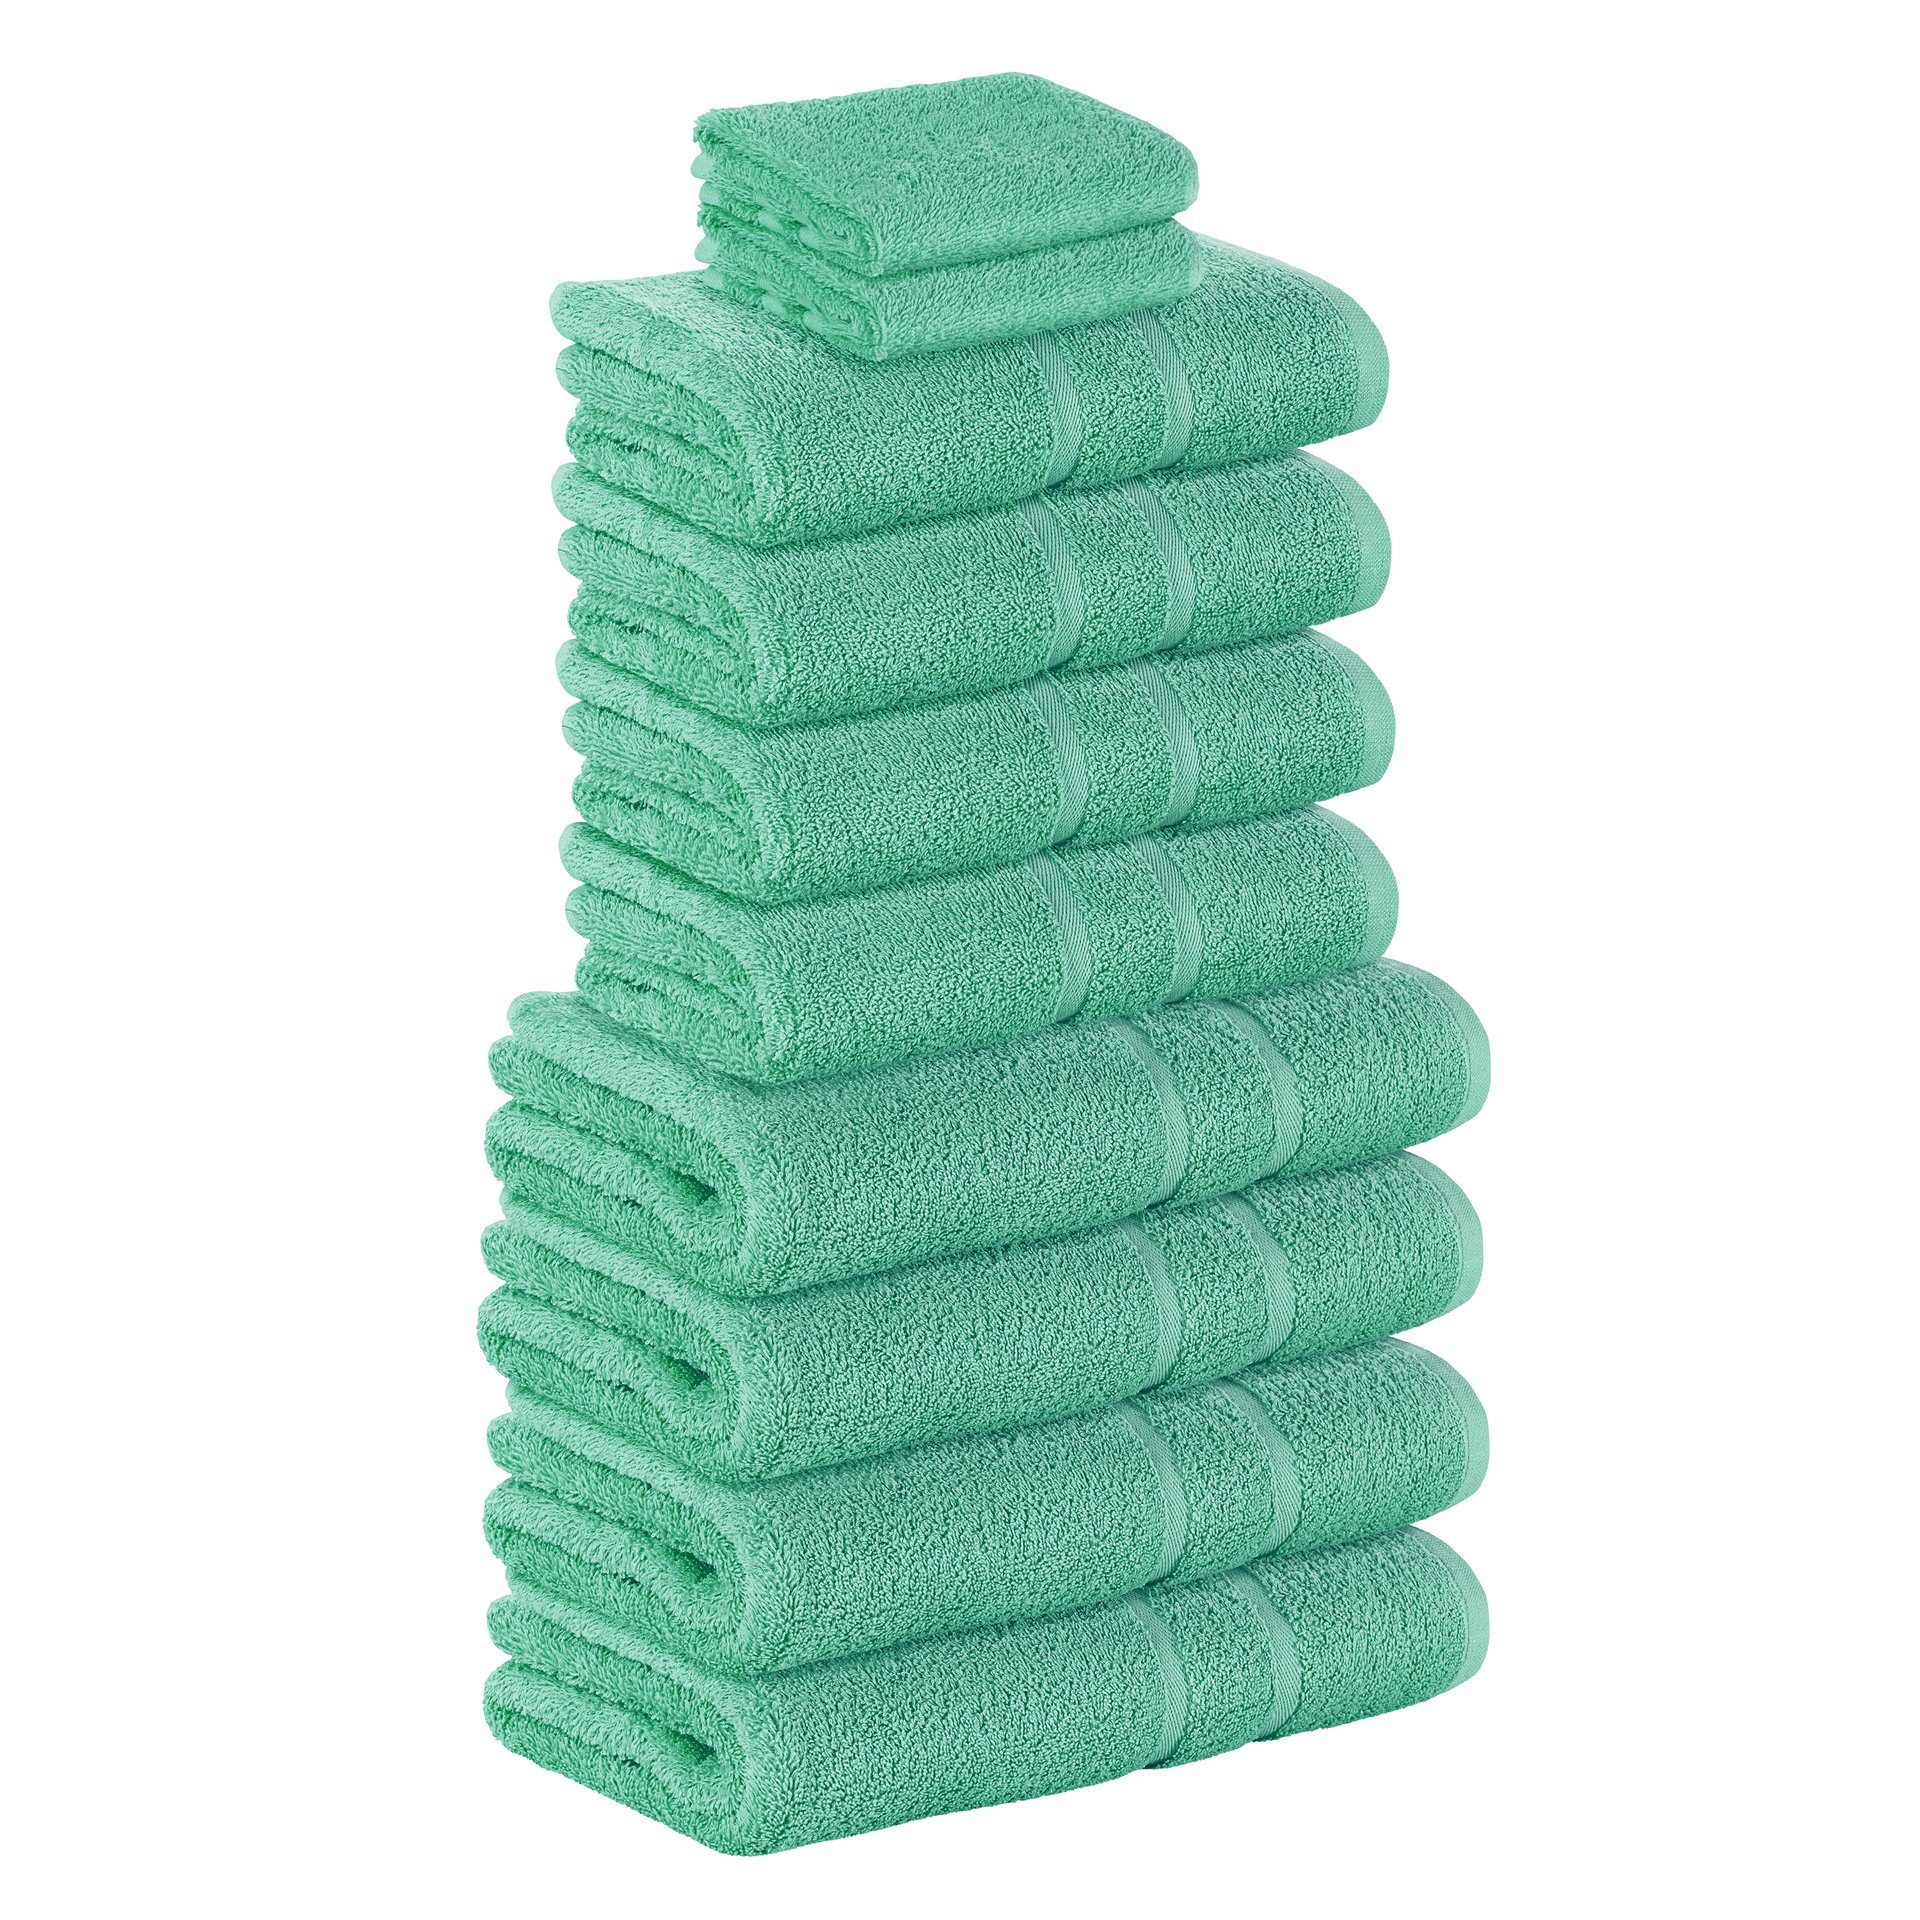 StickandShine Handtuch Set 2x Gästehandtuch 4x Handtücher 4x Duschtücher als SET in verschiedenen Farben (10 Teilig) 100% Baumwolle 500 GSM Frottee 10er Handtuch Pack, (Spar-set), 100% Baumwolle 500 GSM Smaragdgrün